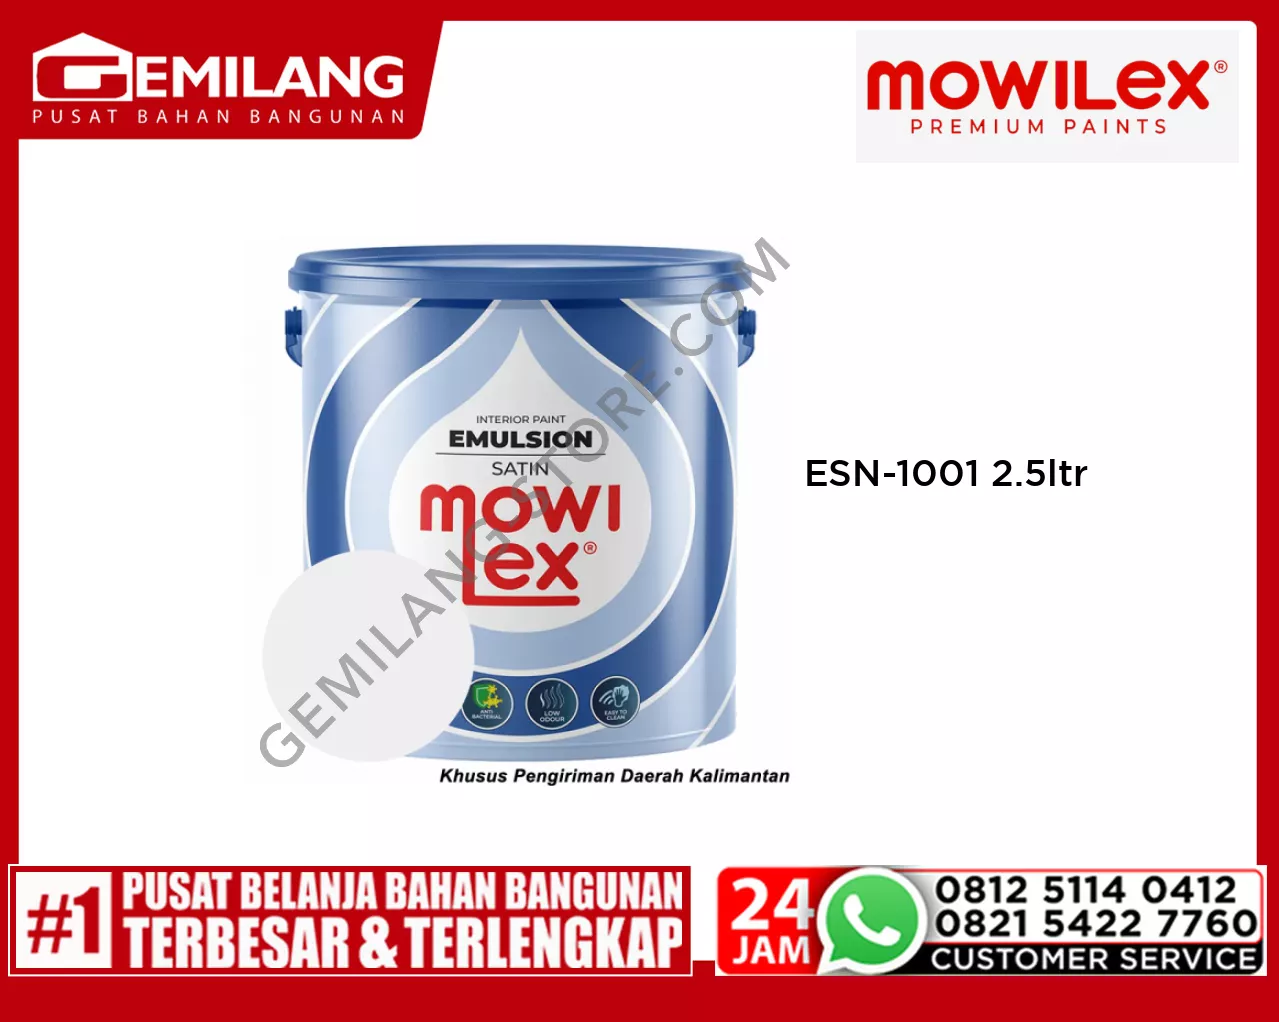 MOWILEX EMULSION SATIN WHITE ESN-1001 2.5ltr